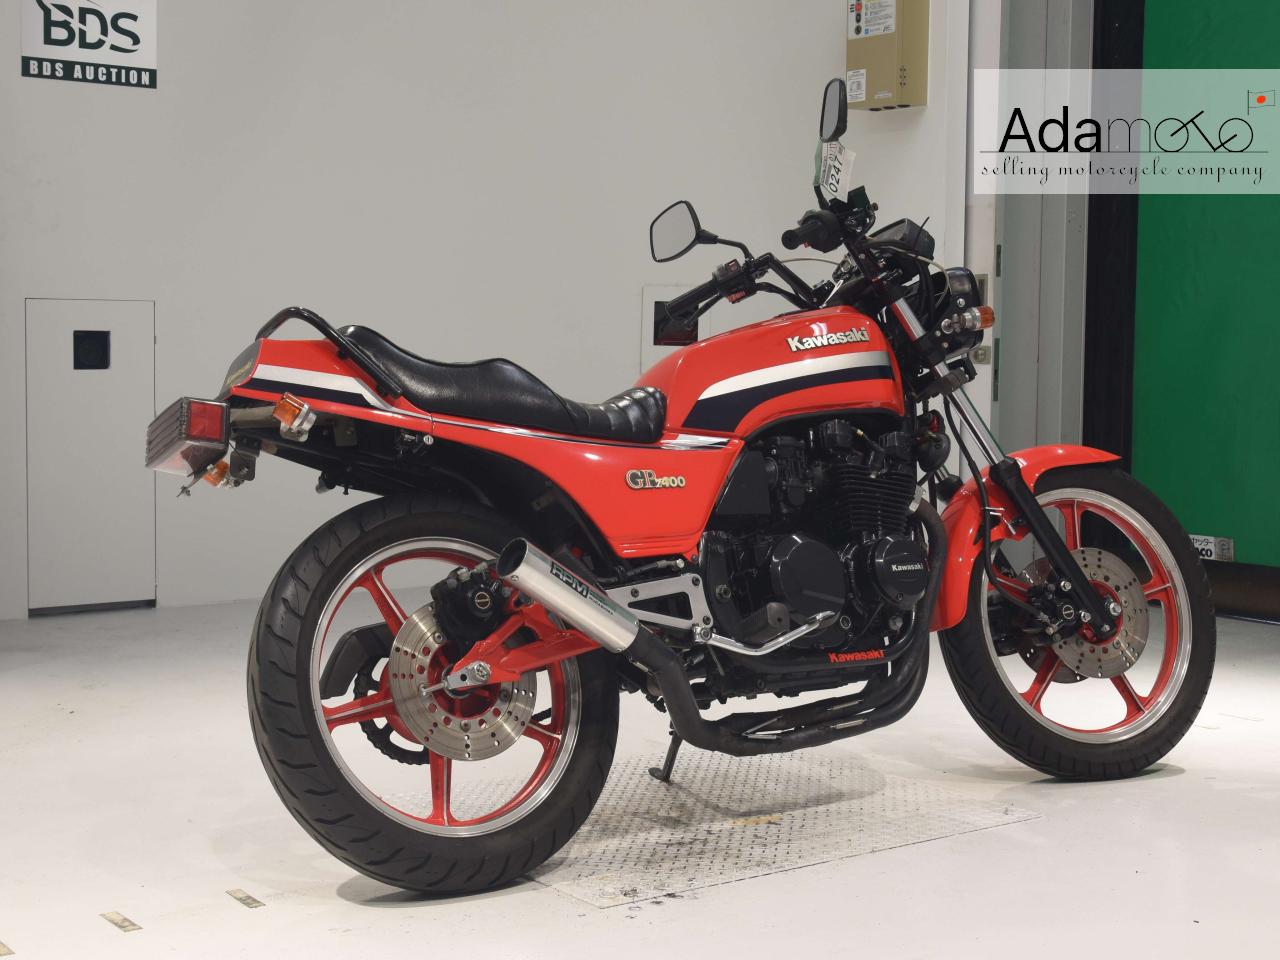 Kawasaki Z400GP - Adamoto - Motorcycles from Japan